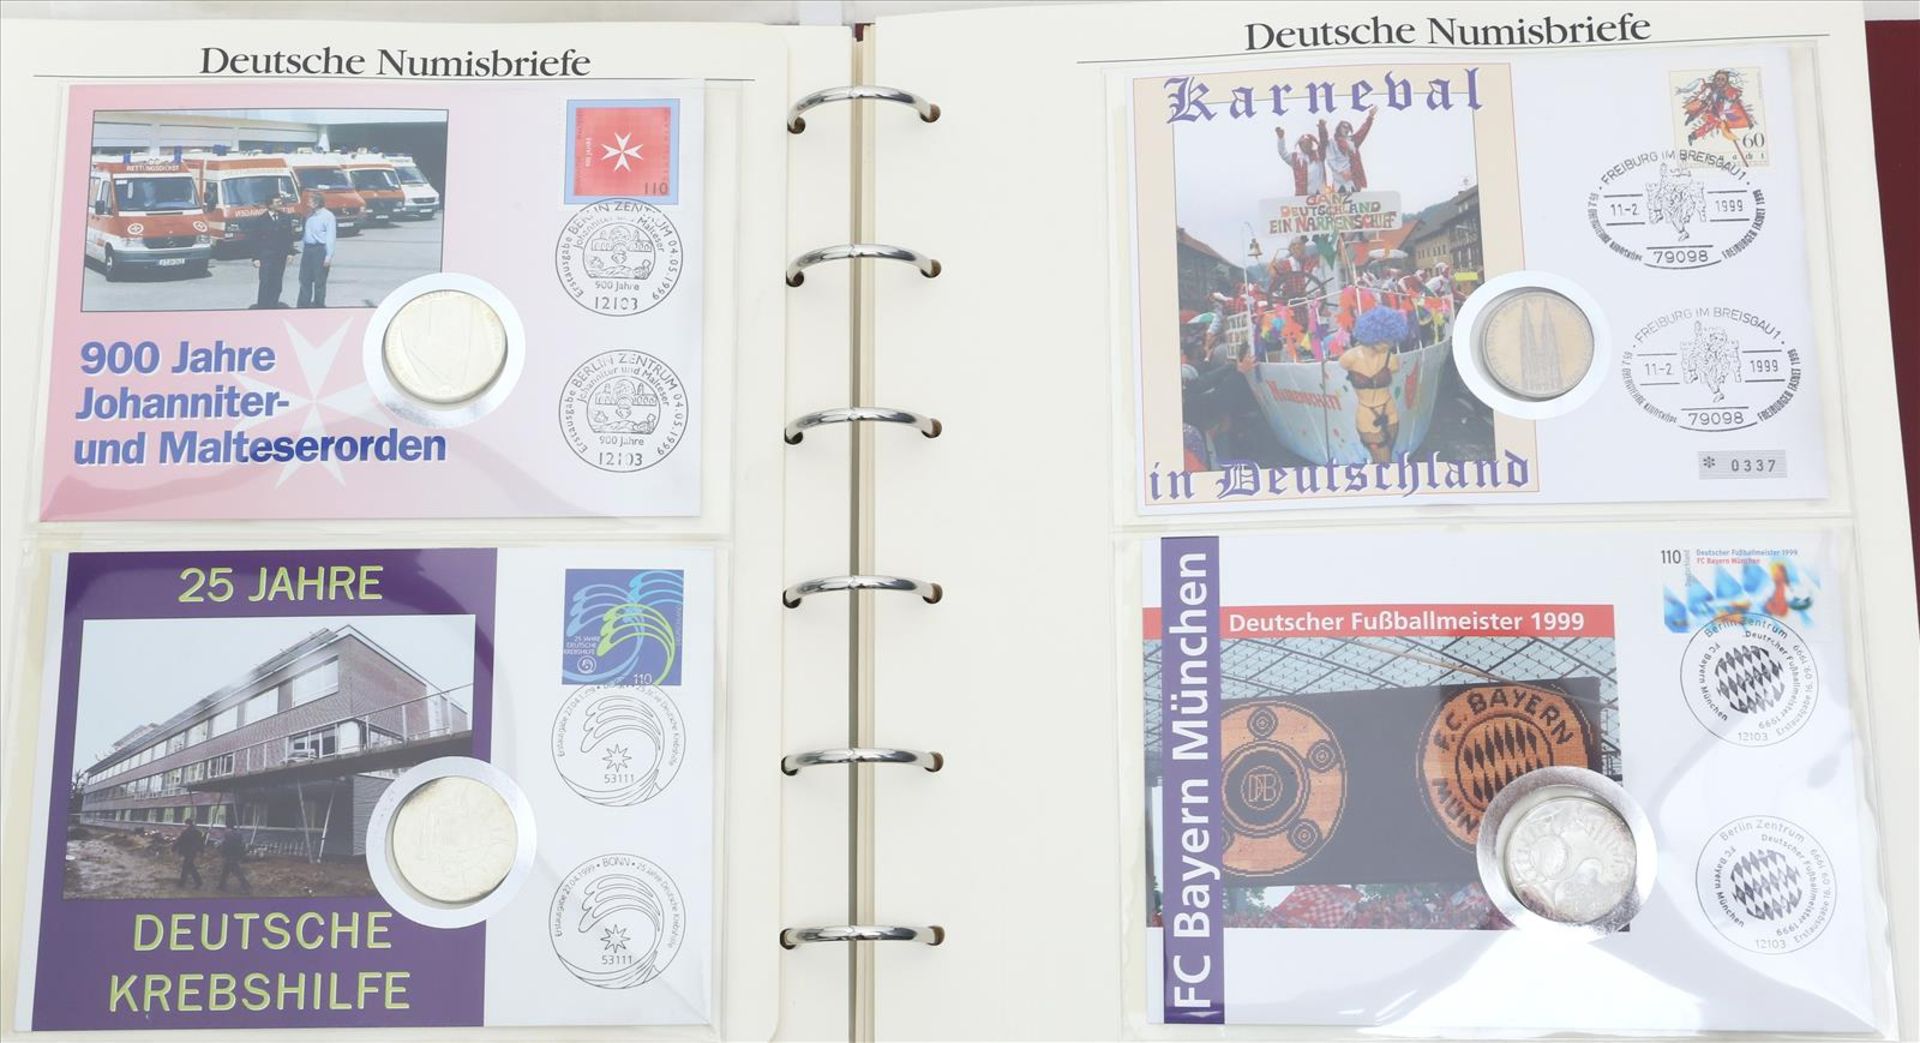 Album mit 50 deutschen Numisbriefen, 1996-2000.Über 300 DM Nennwert der enthaltenen DM-